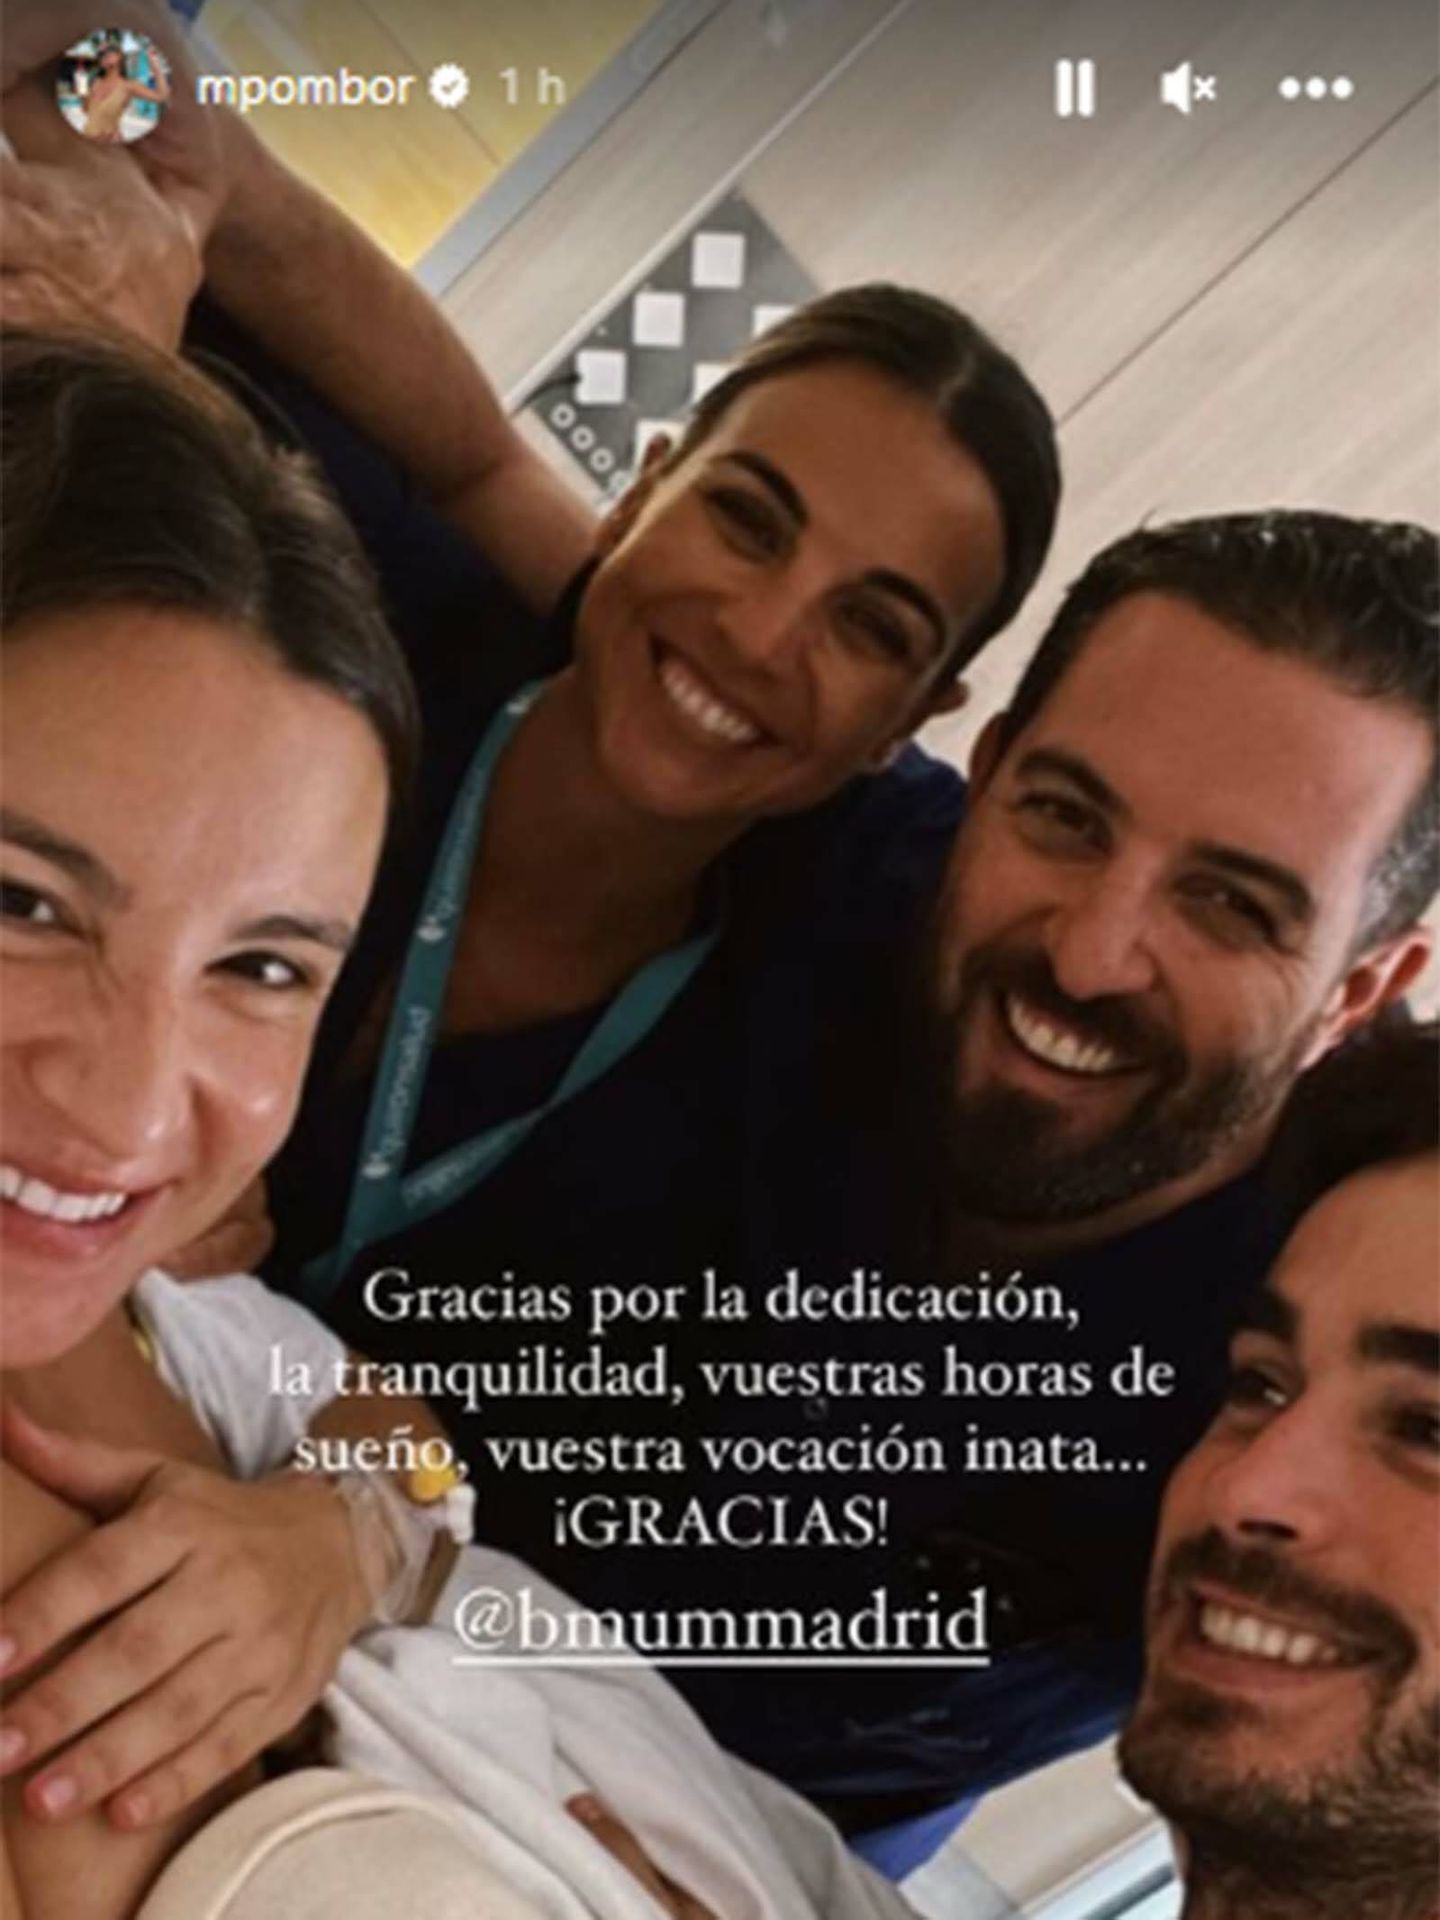 Marta Pombo responde dudas sobre su parto en redes sociales. (Instagram/@mpombor)